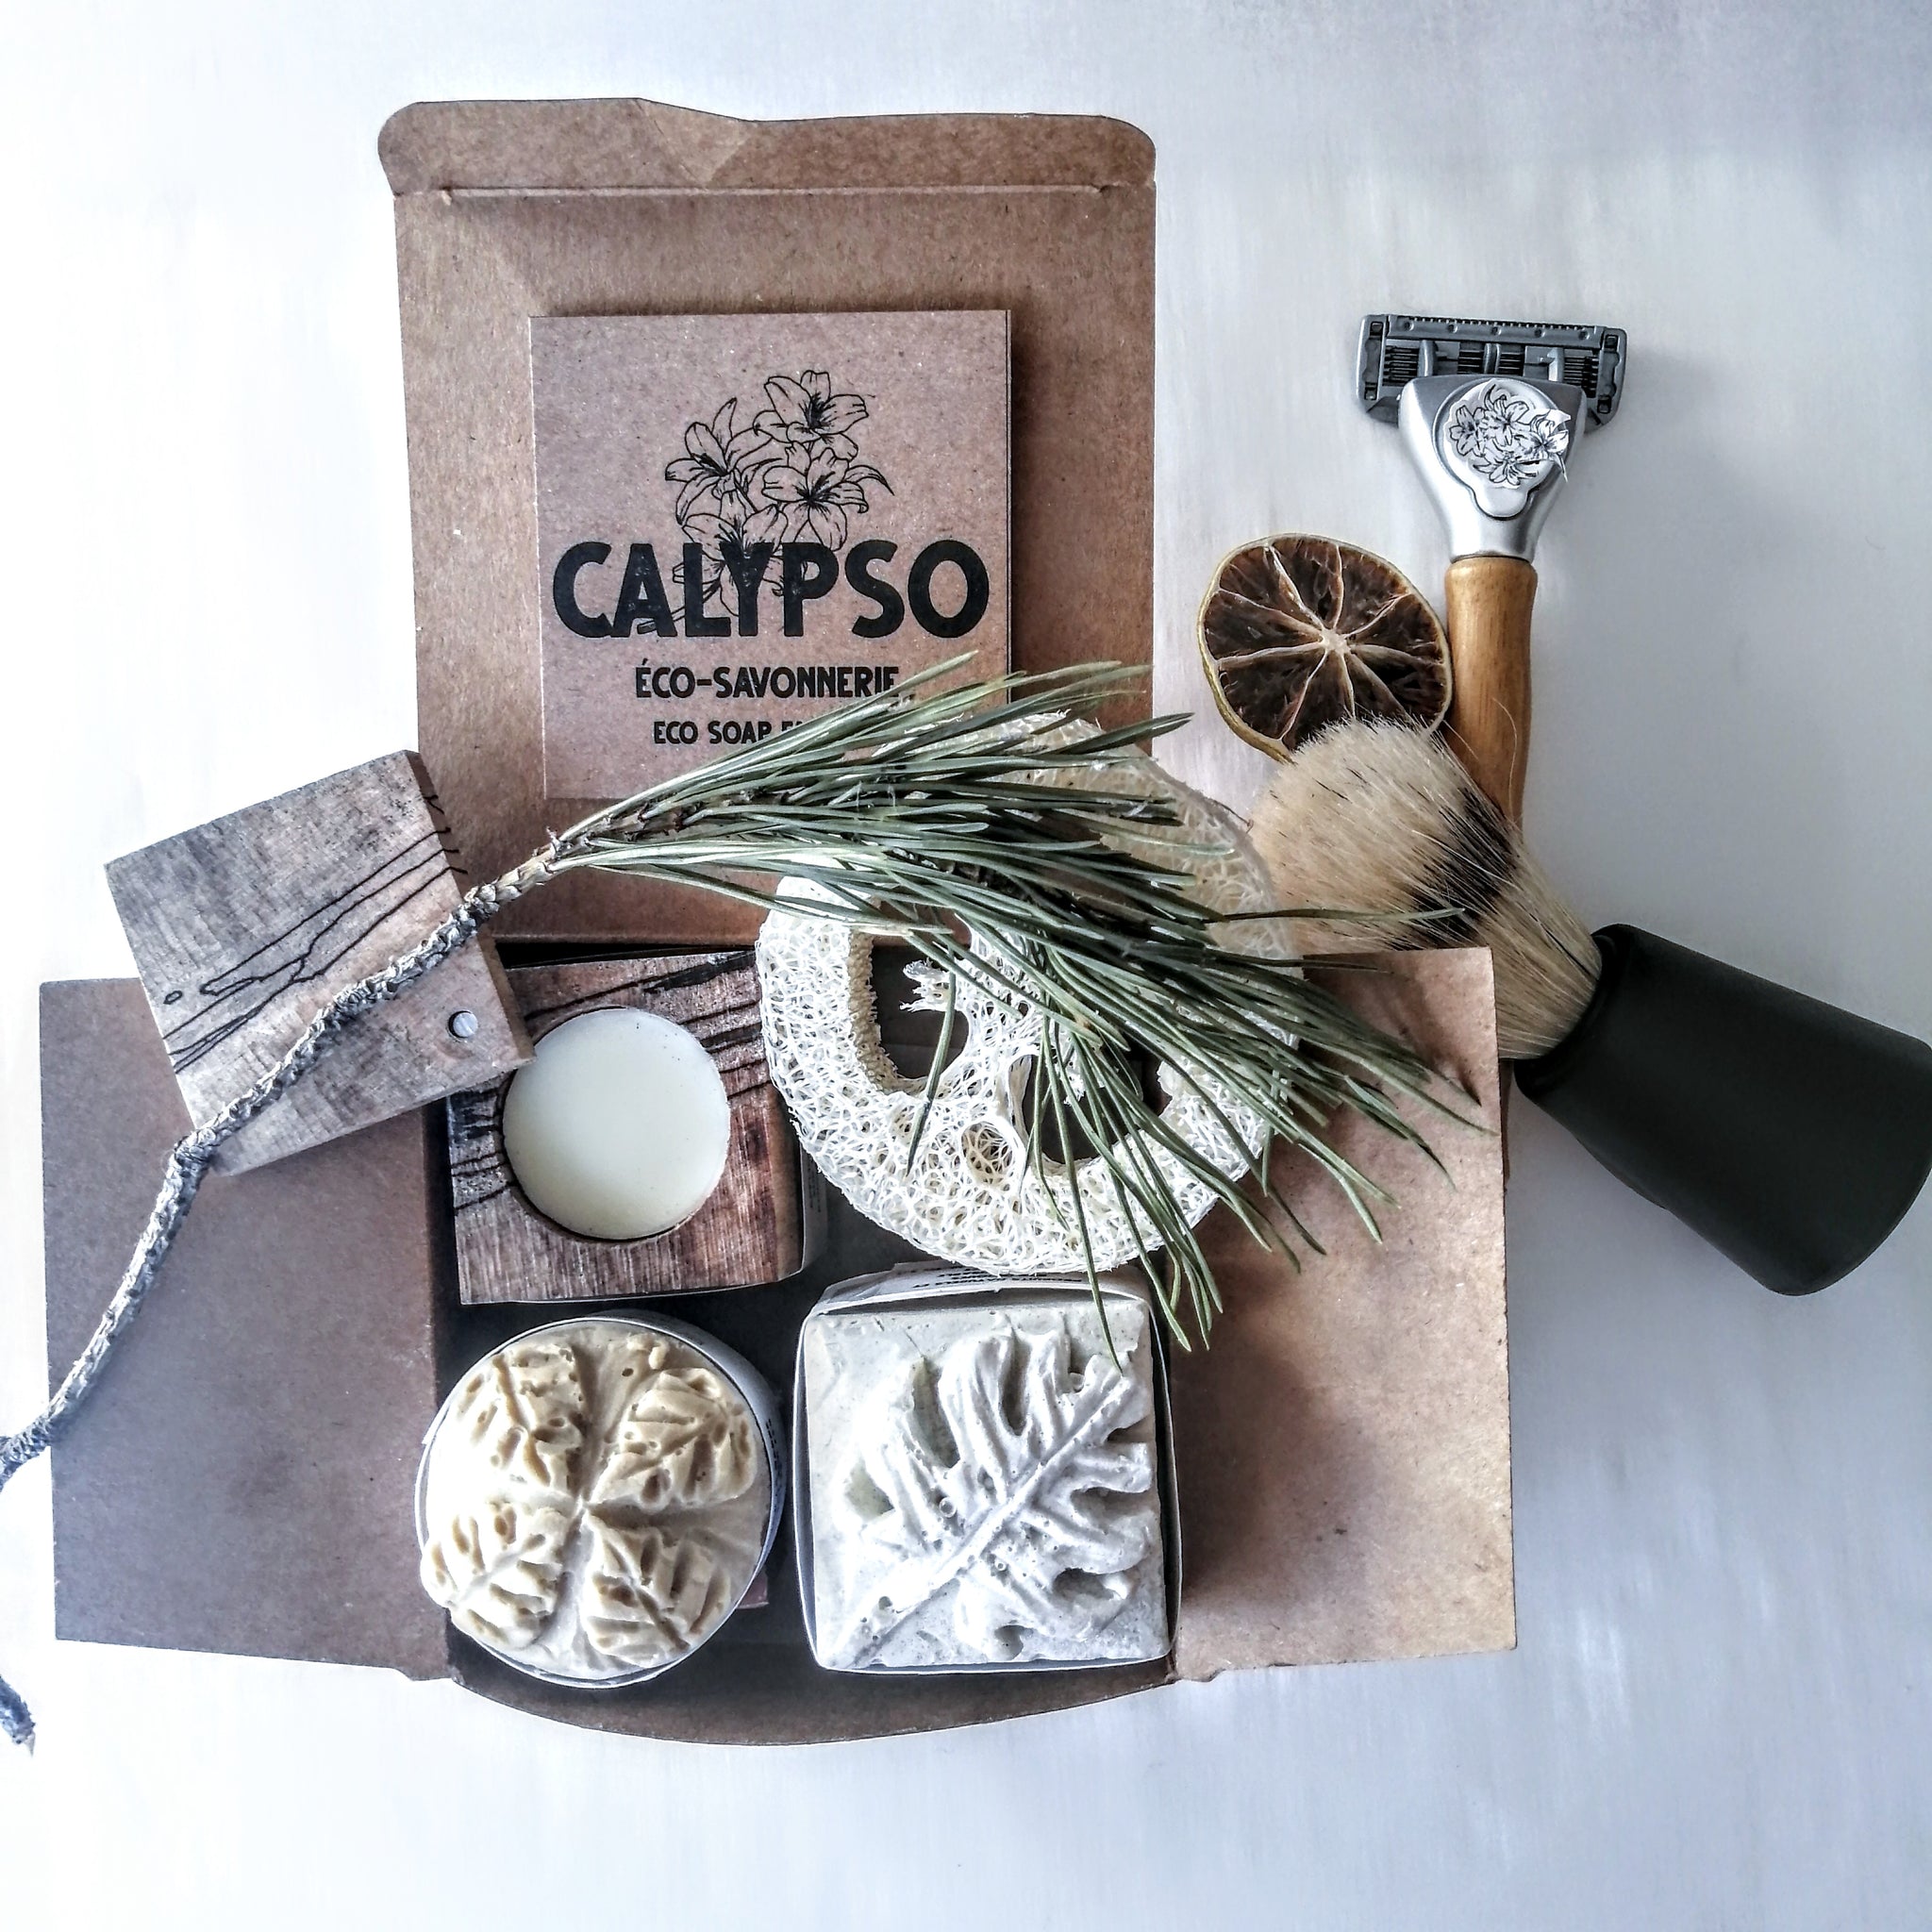 COFFRET CADEAU - MÉGA BOX ÉCOLO POUR HOMME - gift for men – Calypso  Éco-savonnerie